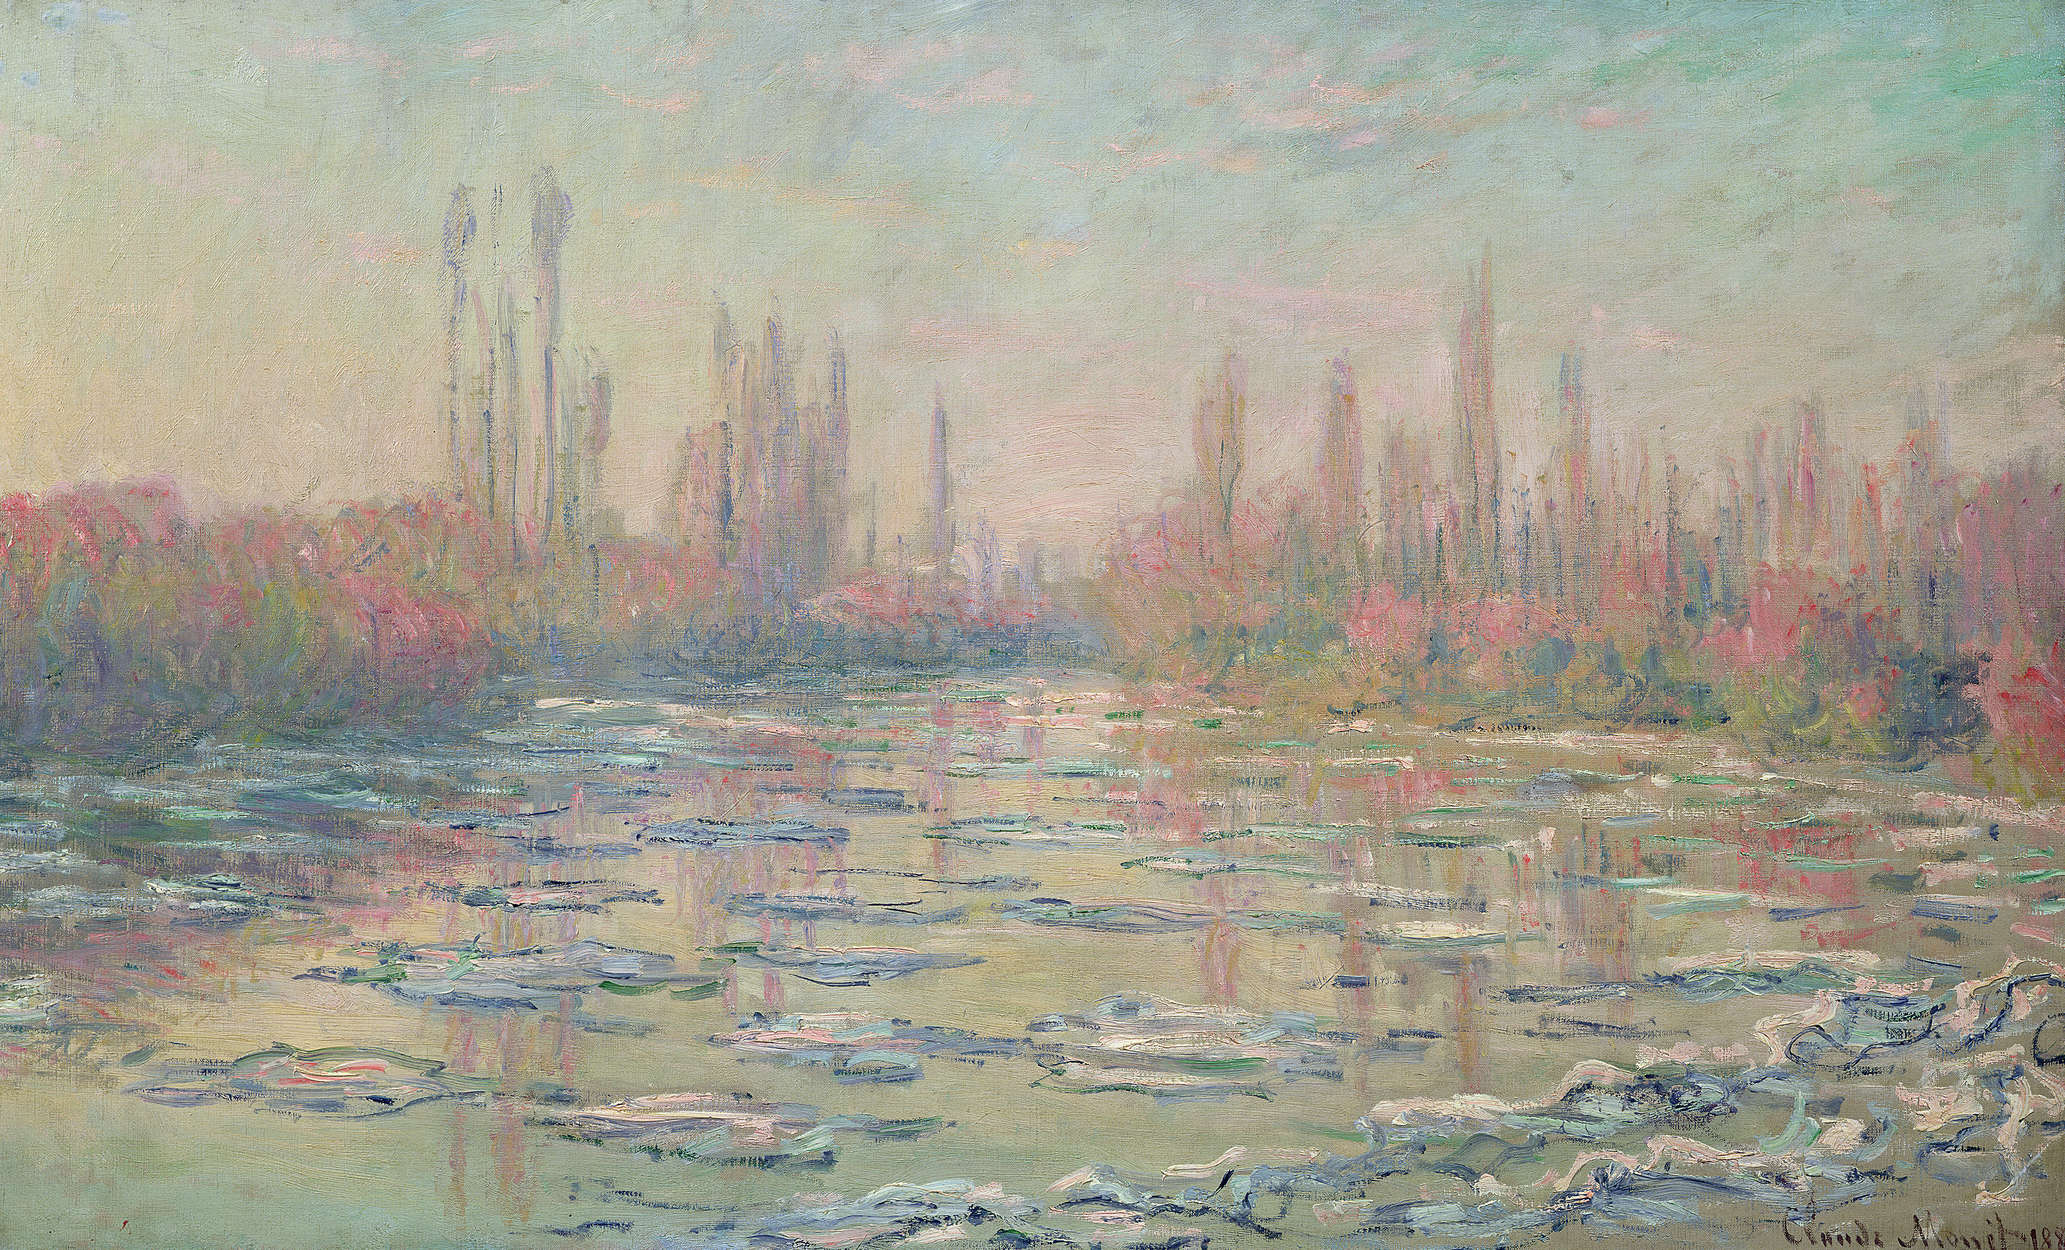             Fototapete "Das Tauwetter an der Seinebei Vetheuil" von Claude Monet
        